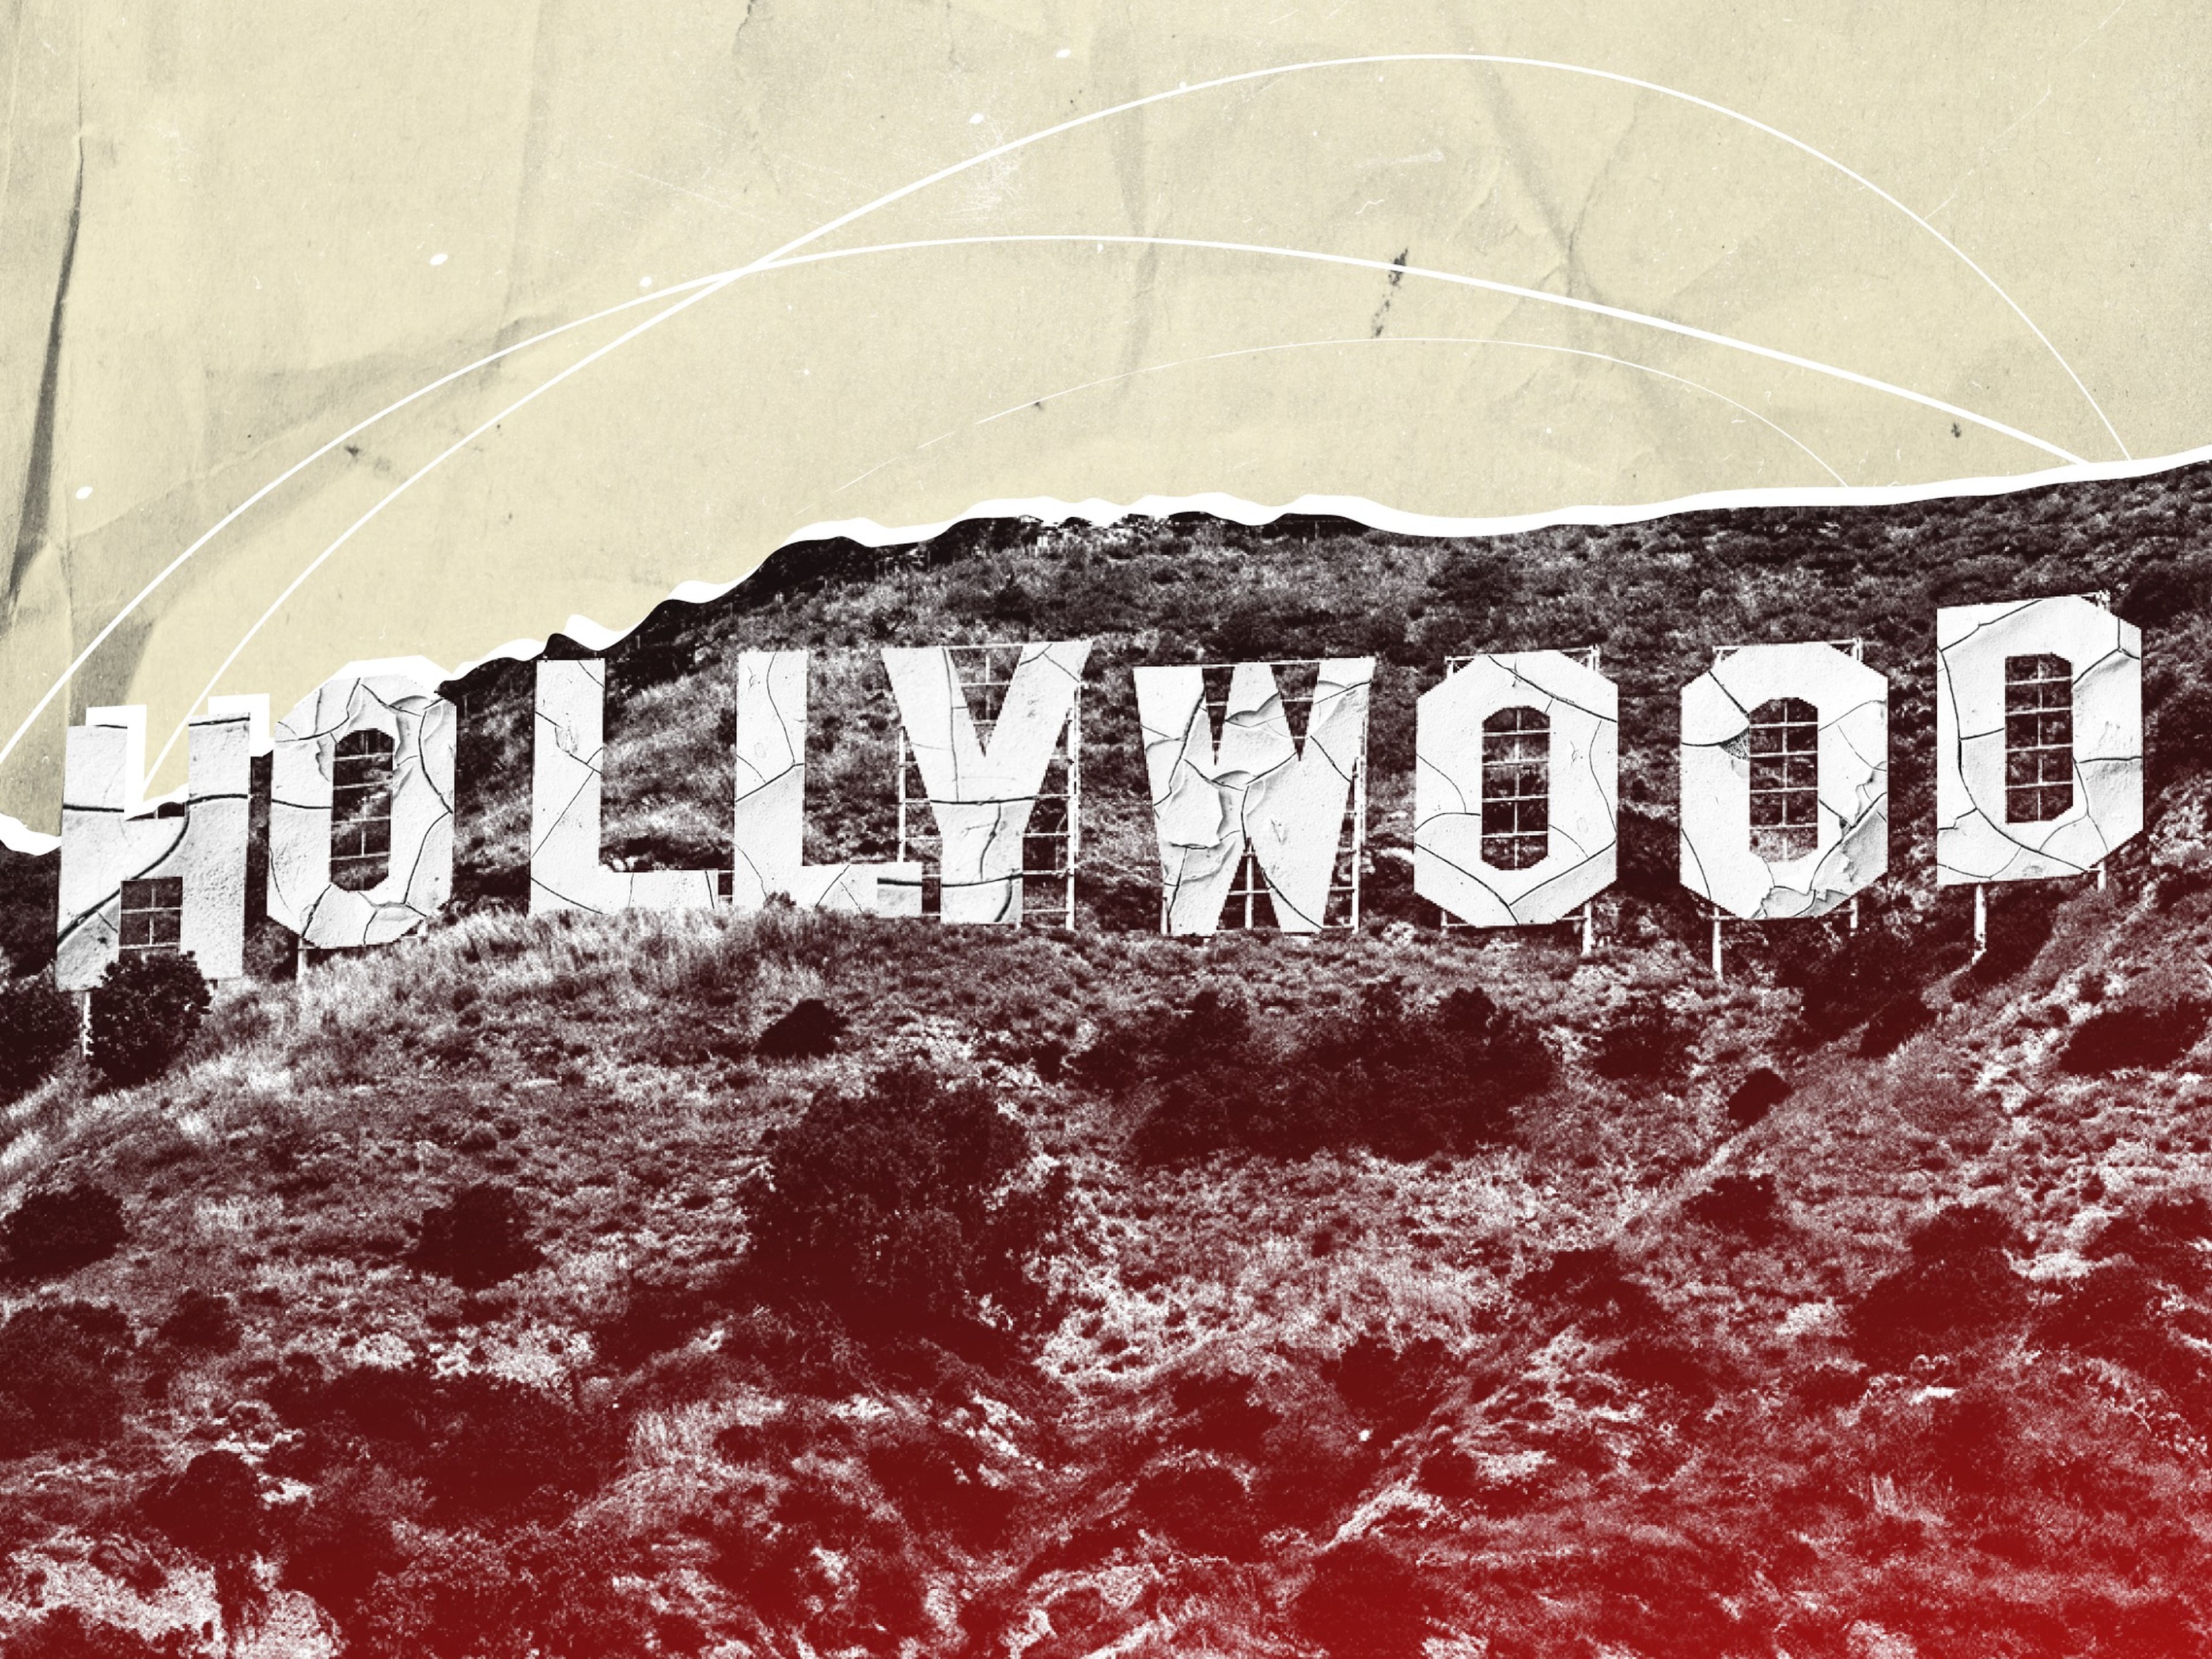 Los jóvenes de Hollywood están endeudados y con pocas opciones de trabajar, mientras la huelga de guionistas afronta su tercer mes.